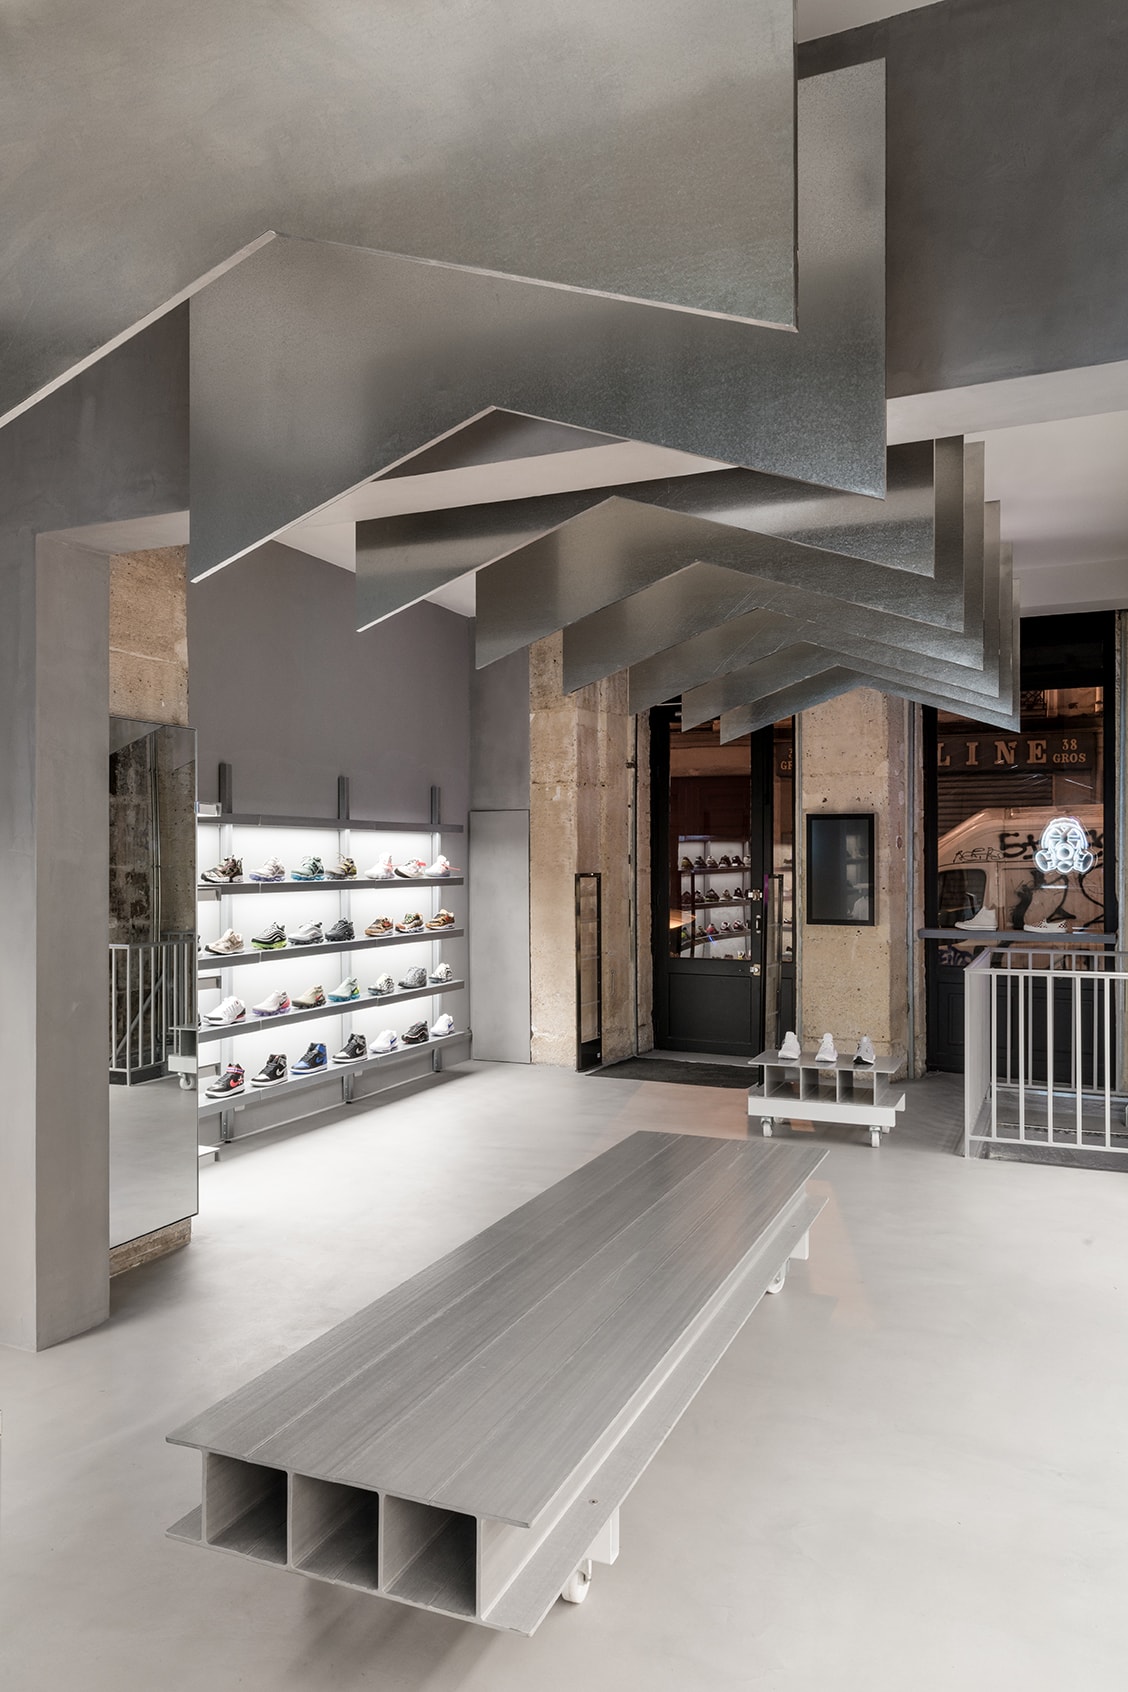 Footpatrol New Paris Store 45 Rue du Temple Le Marais District Sneakers Kicks Trainers Shoes